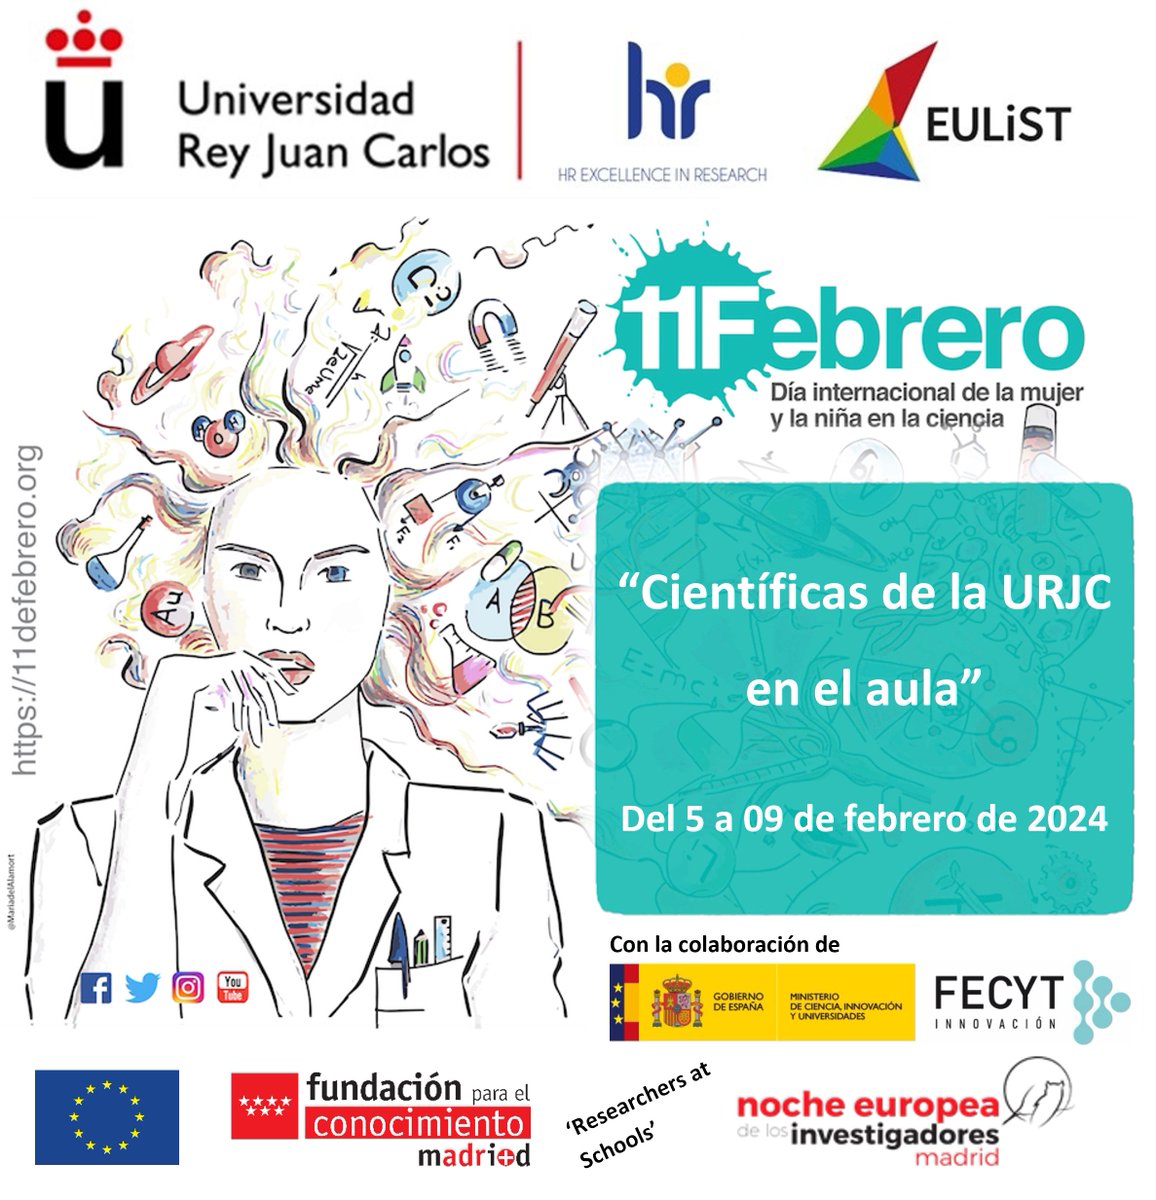 📆 Del 5 al 9 de febrero 'Científicas de la URJC en el aula' 📍 En centros educativos de la Comunidad de Madrid ℹ️ Más información: cutt.ly/0wXS2LtX #mujeryciencia #11F #DiaMujerYNinaEnCiencia #ResearchersAtSchools